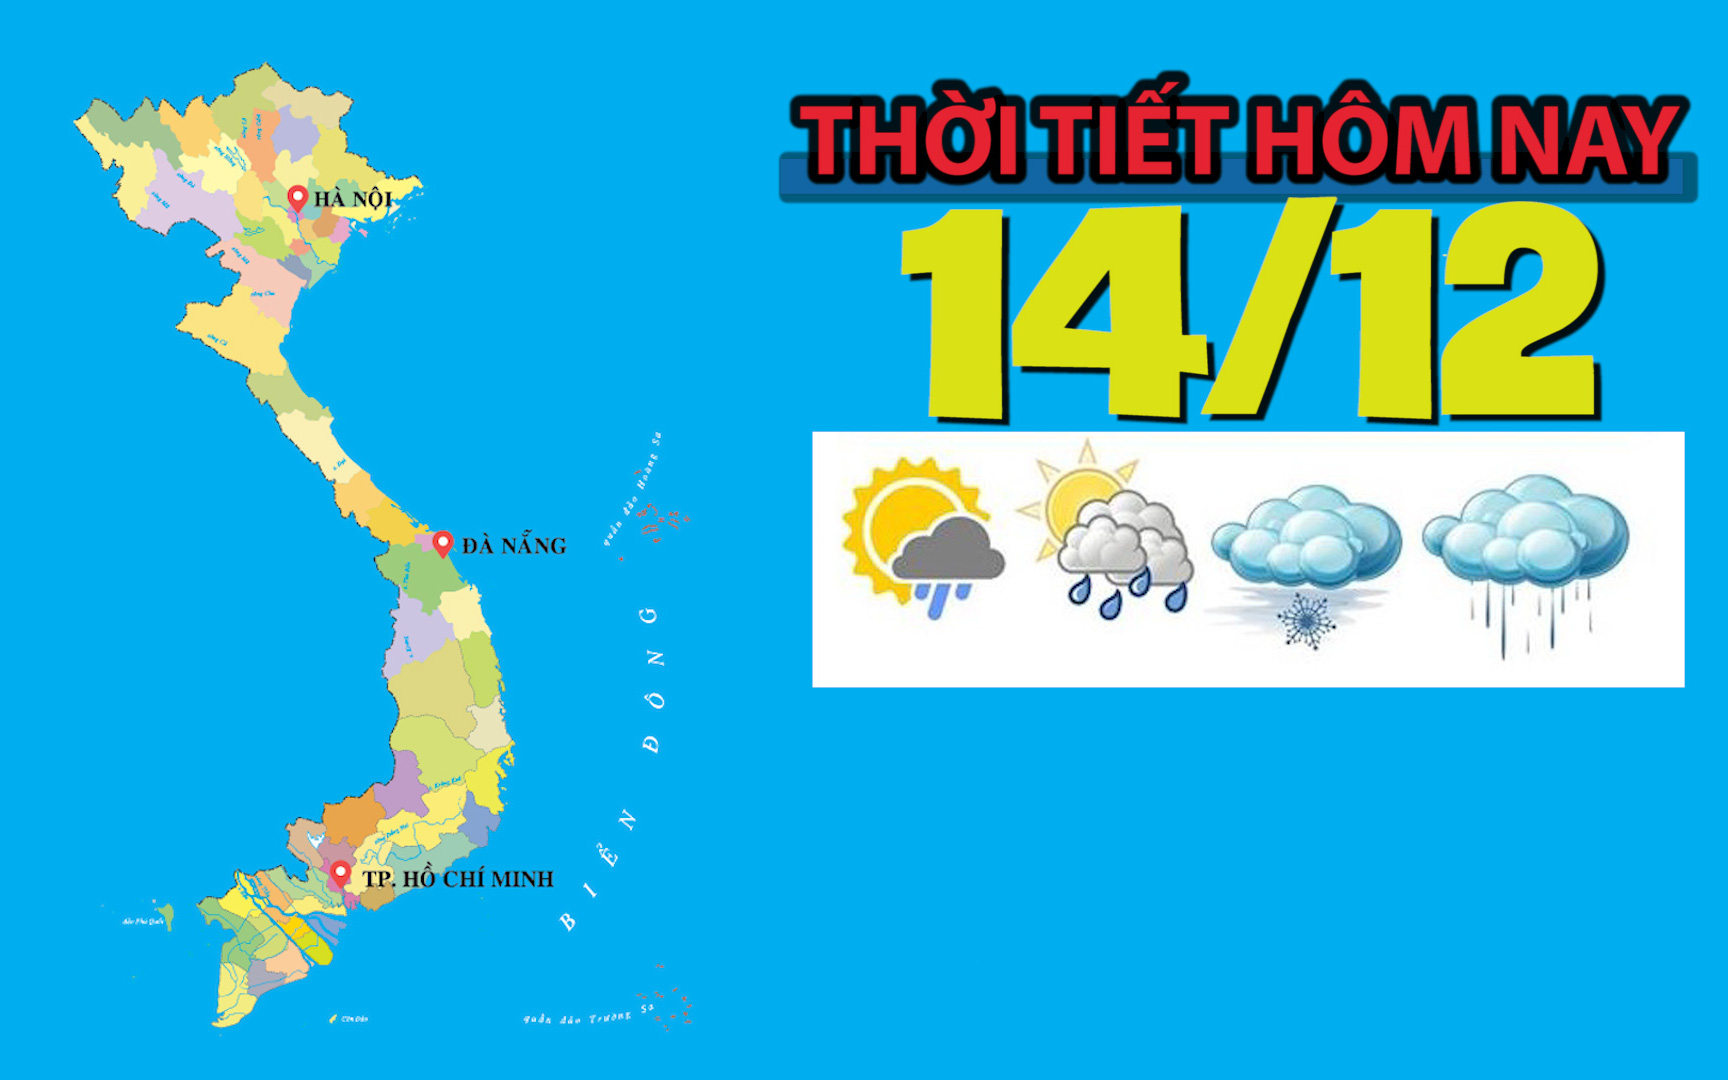 Thời tiết hôm nay 14/12: Bắc Bộ, Bắc Trung Bộ đêm và sáng trời rét, vùng núi rét đậm; Tây Nguyên, Nam Bộ ngày nắng